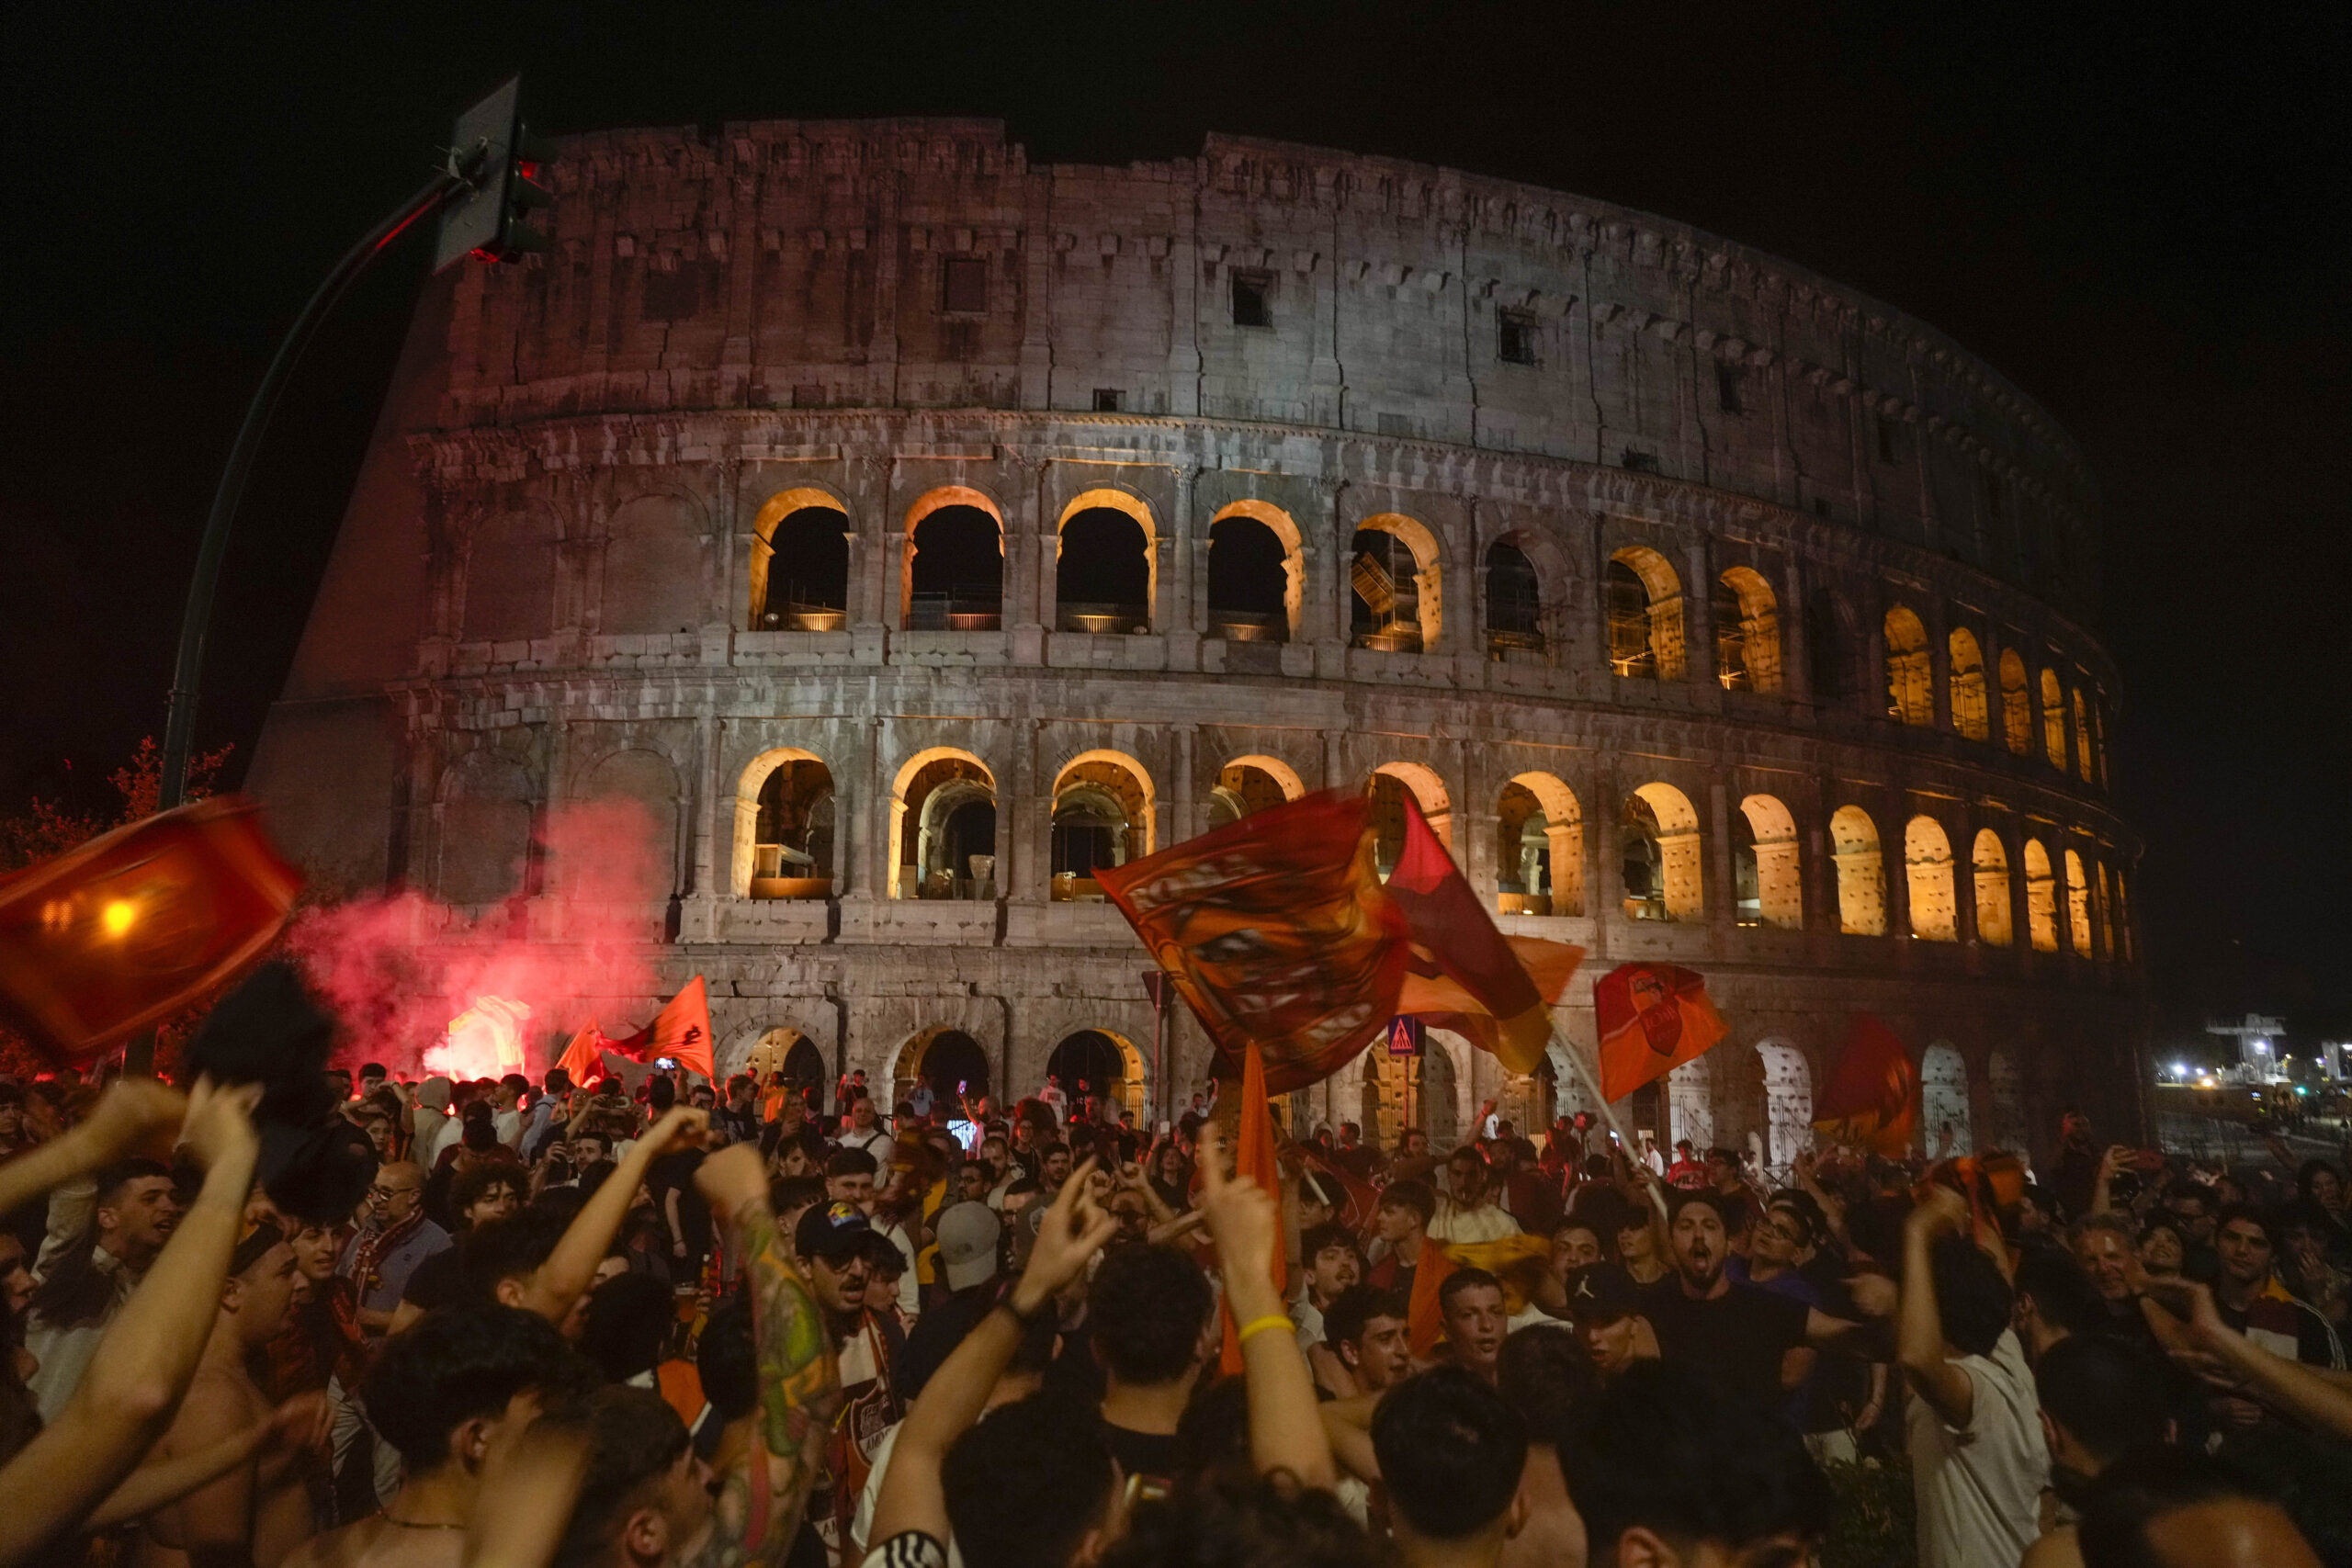 La Roma vince la Conference League e a Roma esplode la festa  – FOTOGALLERY